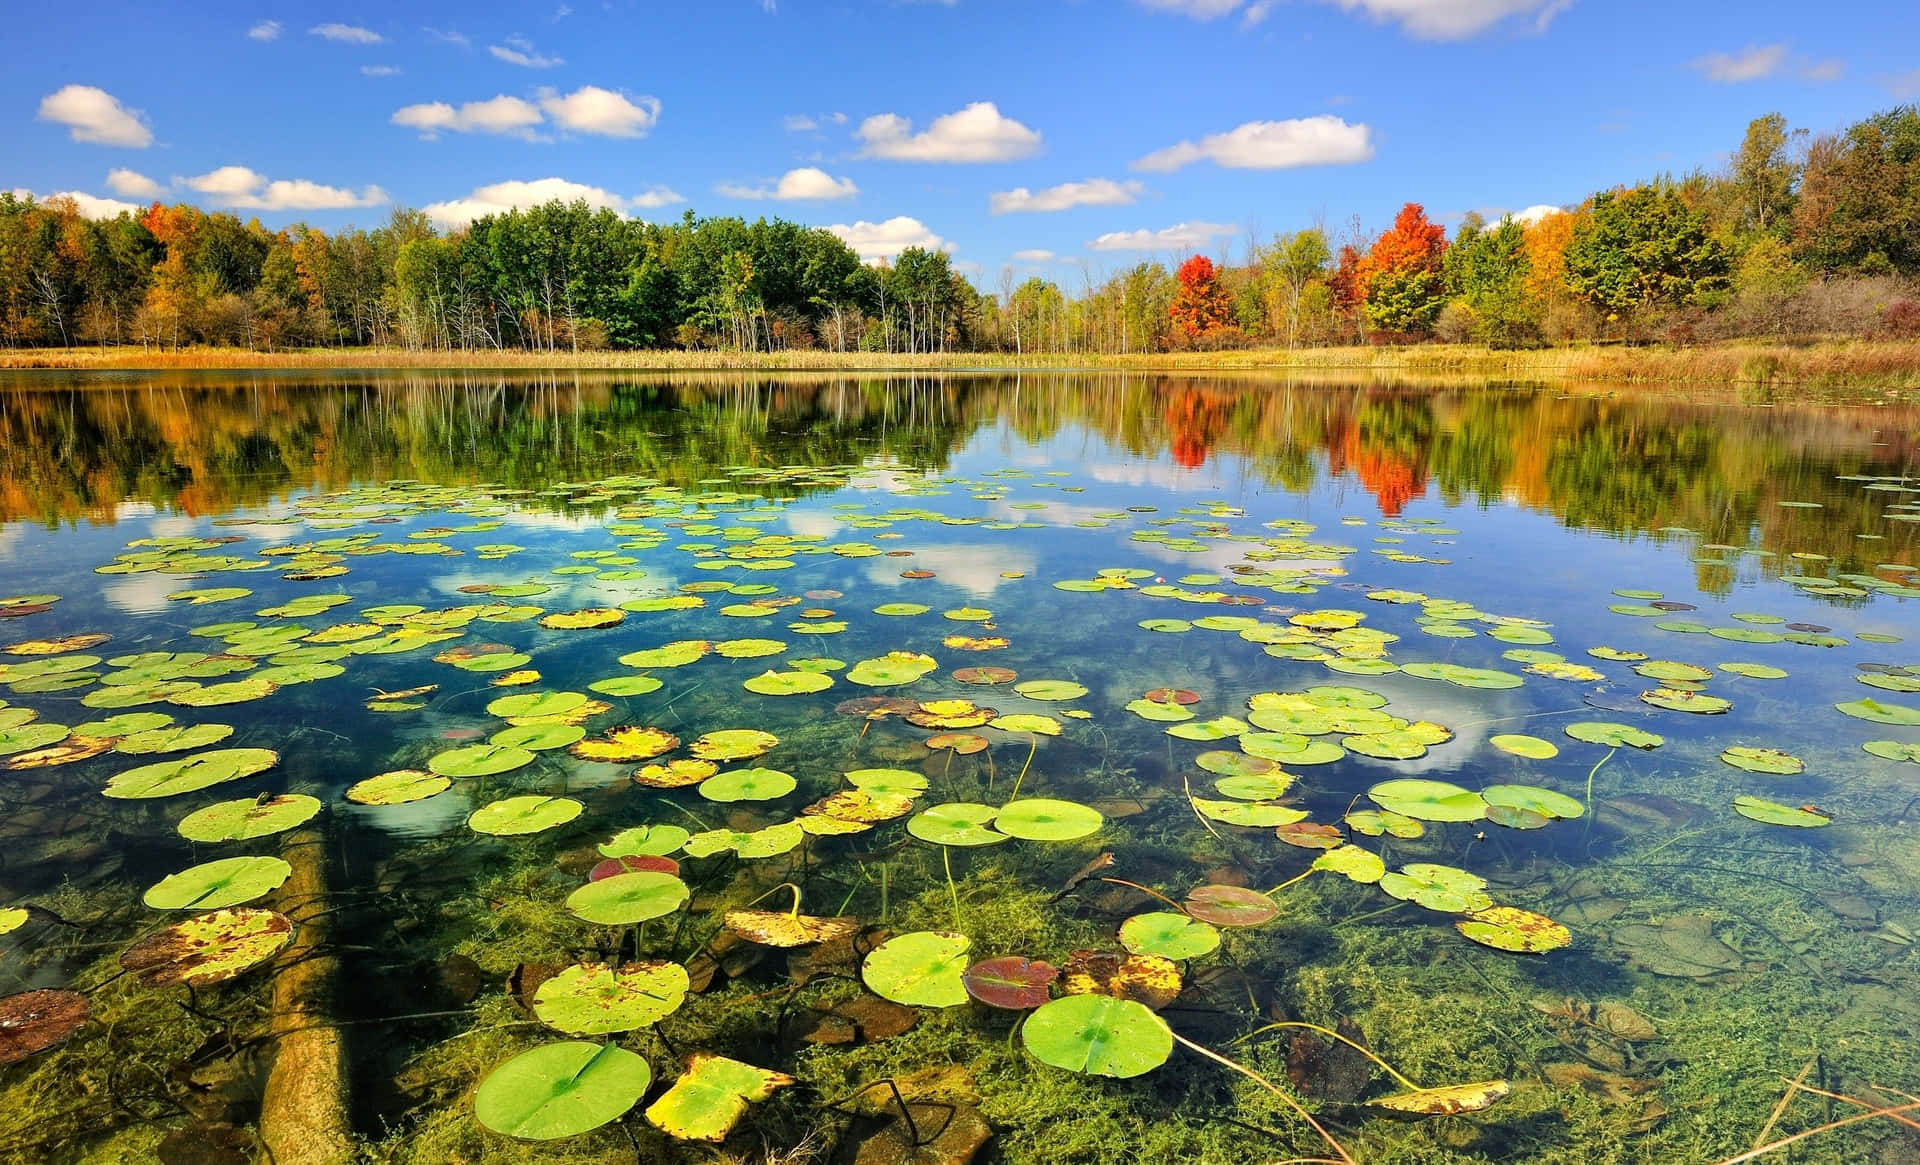 Nyd skønheden i naturen og tag tid til at nyde den uberørte sø af denne smukke sø. Wallpaper